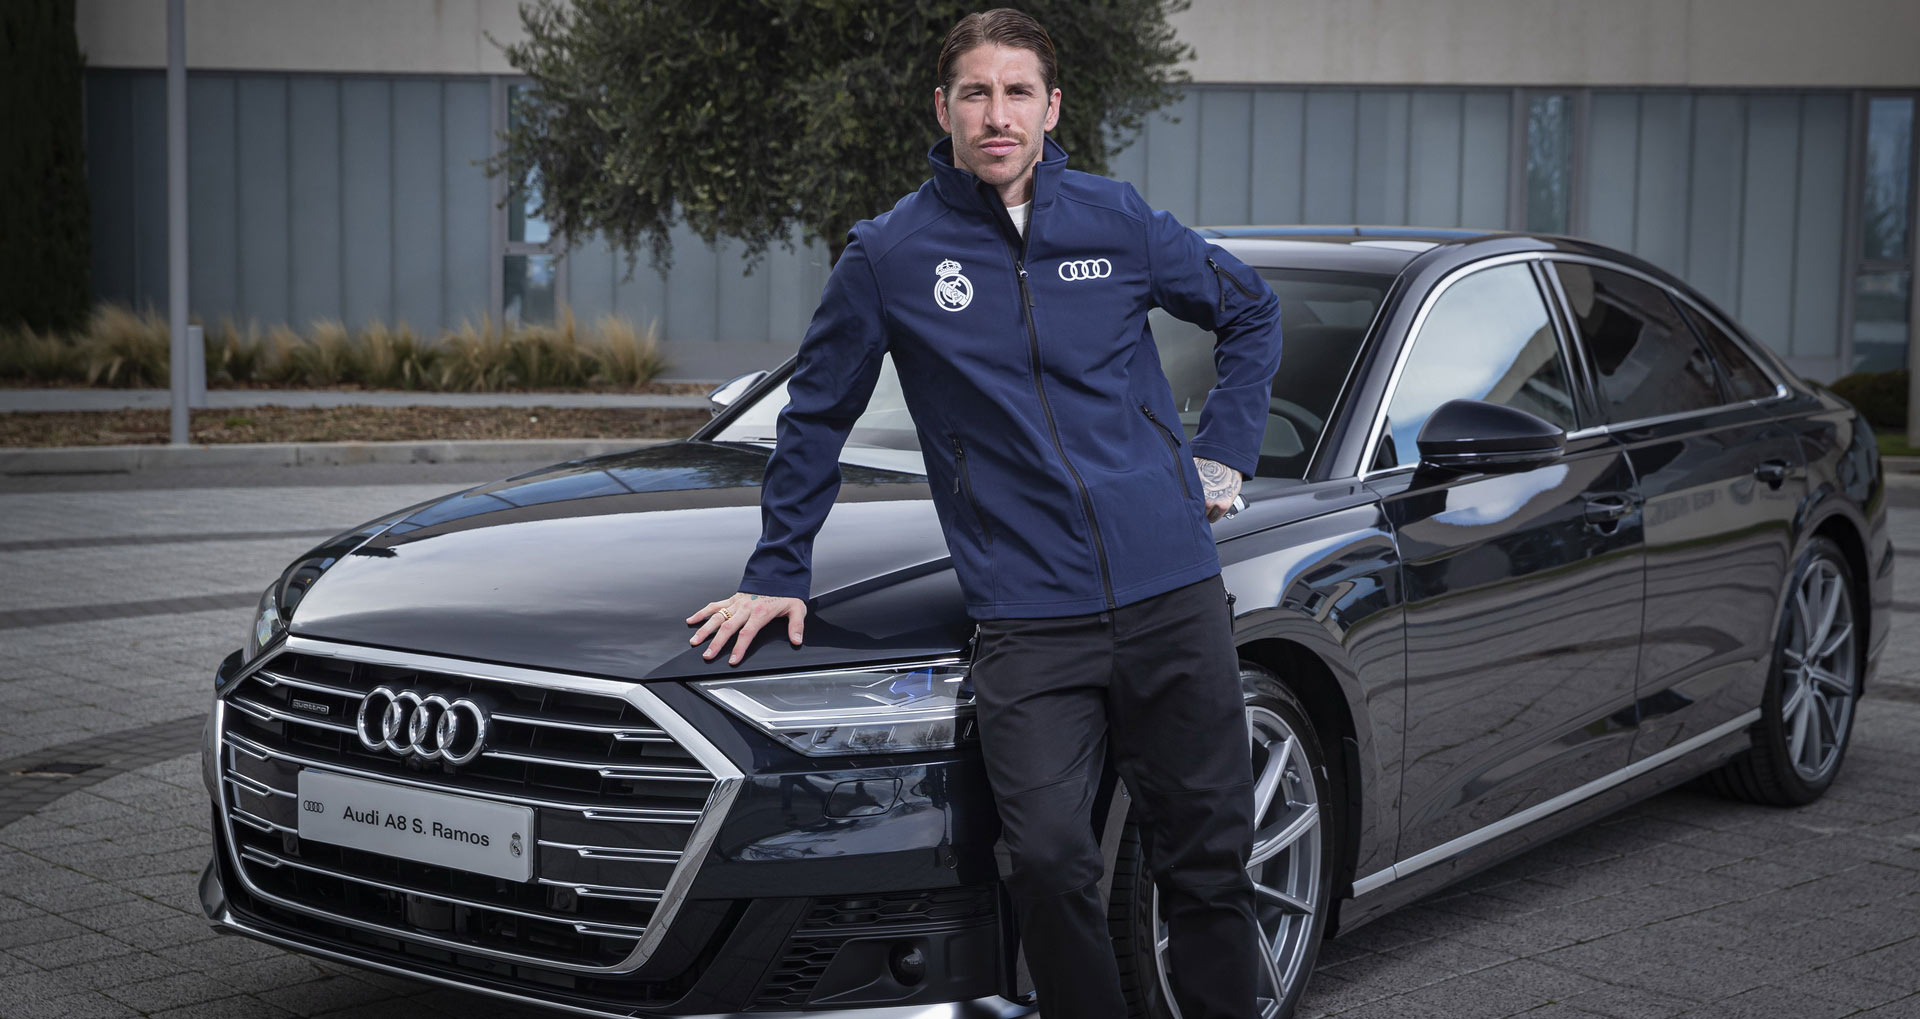 Quà Giáng sinh siêu to: Các cầu thủ Real Madrid được tặng dàn xe sang Audi cực chất